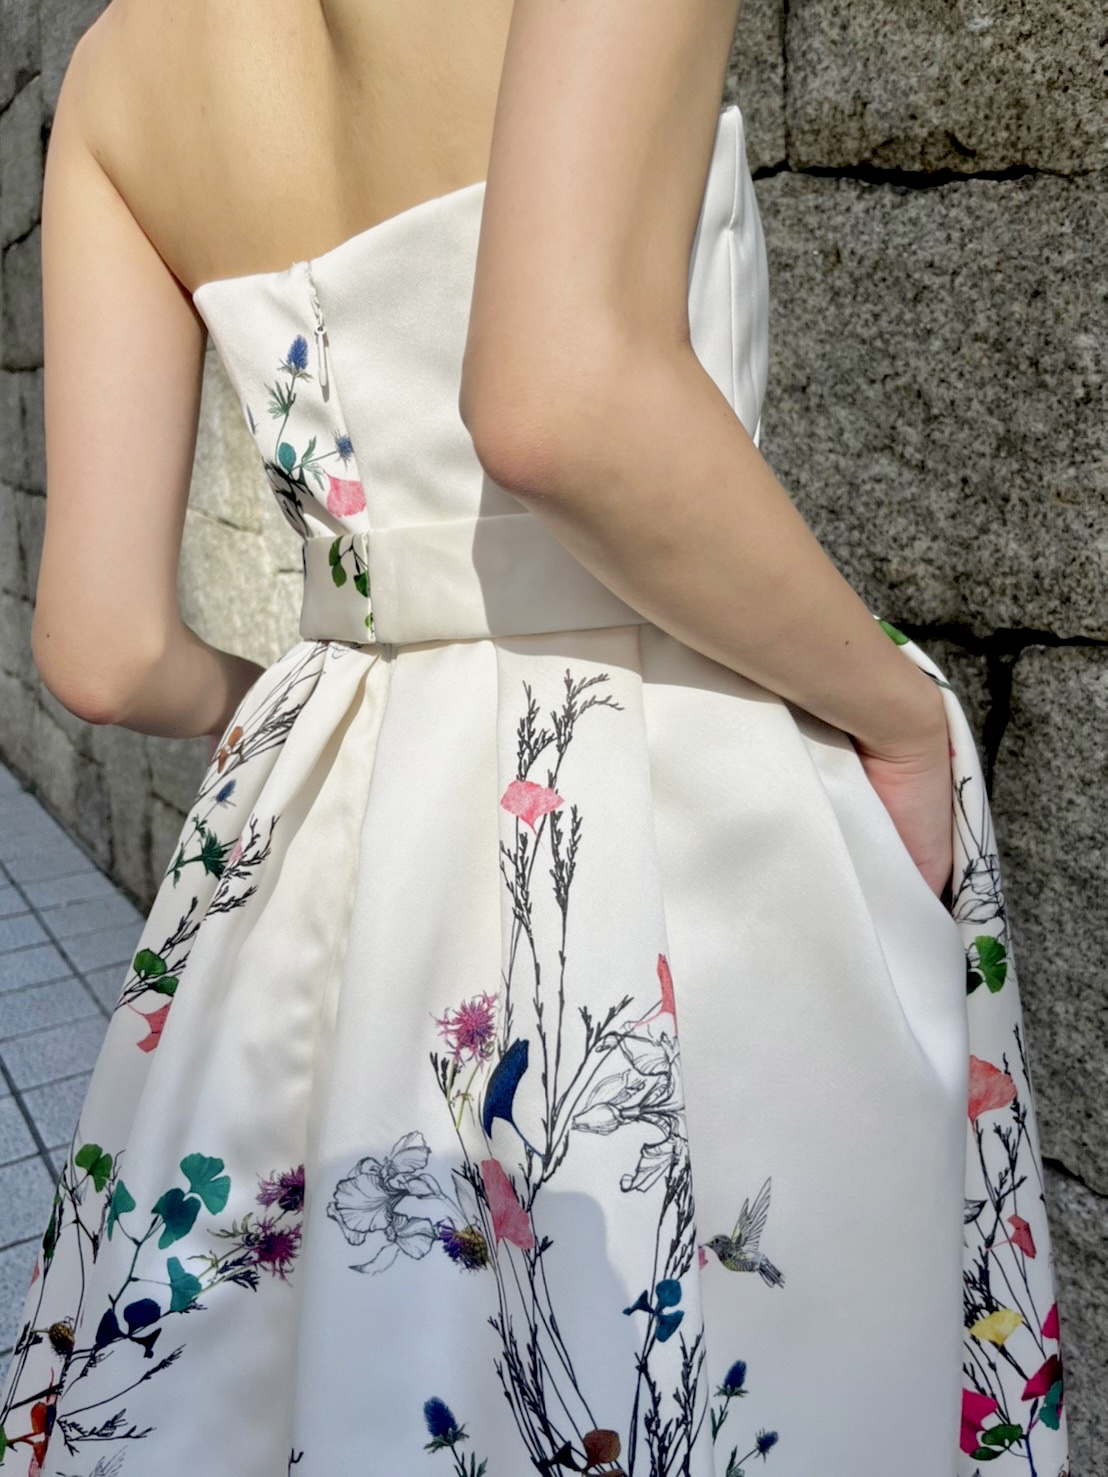 TREATがおすすめする、おしゃれ花嫁に人気なモニークルイリエの白地に花柄プリントされたカラードレス